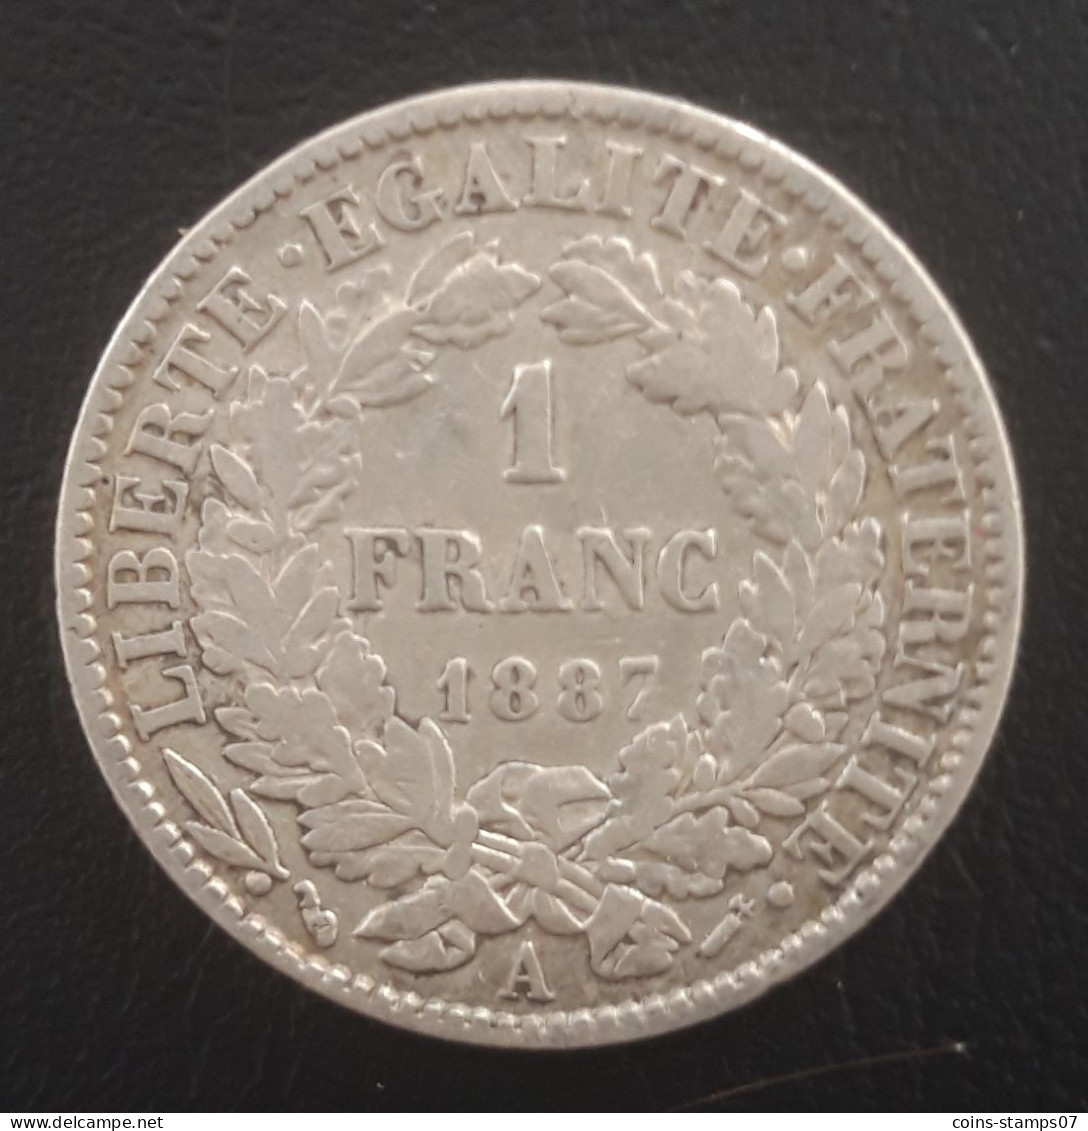 France - 1 Franc Cérès 1887 A - 1 Franc